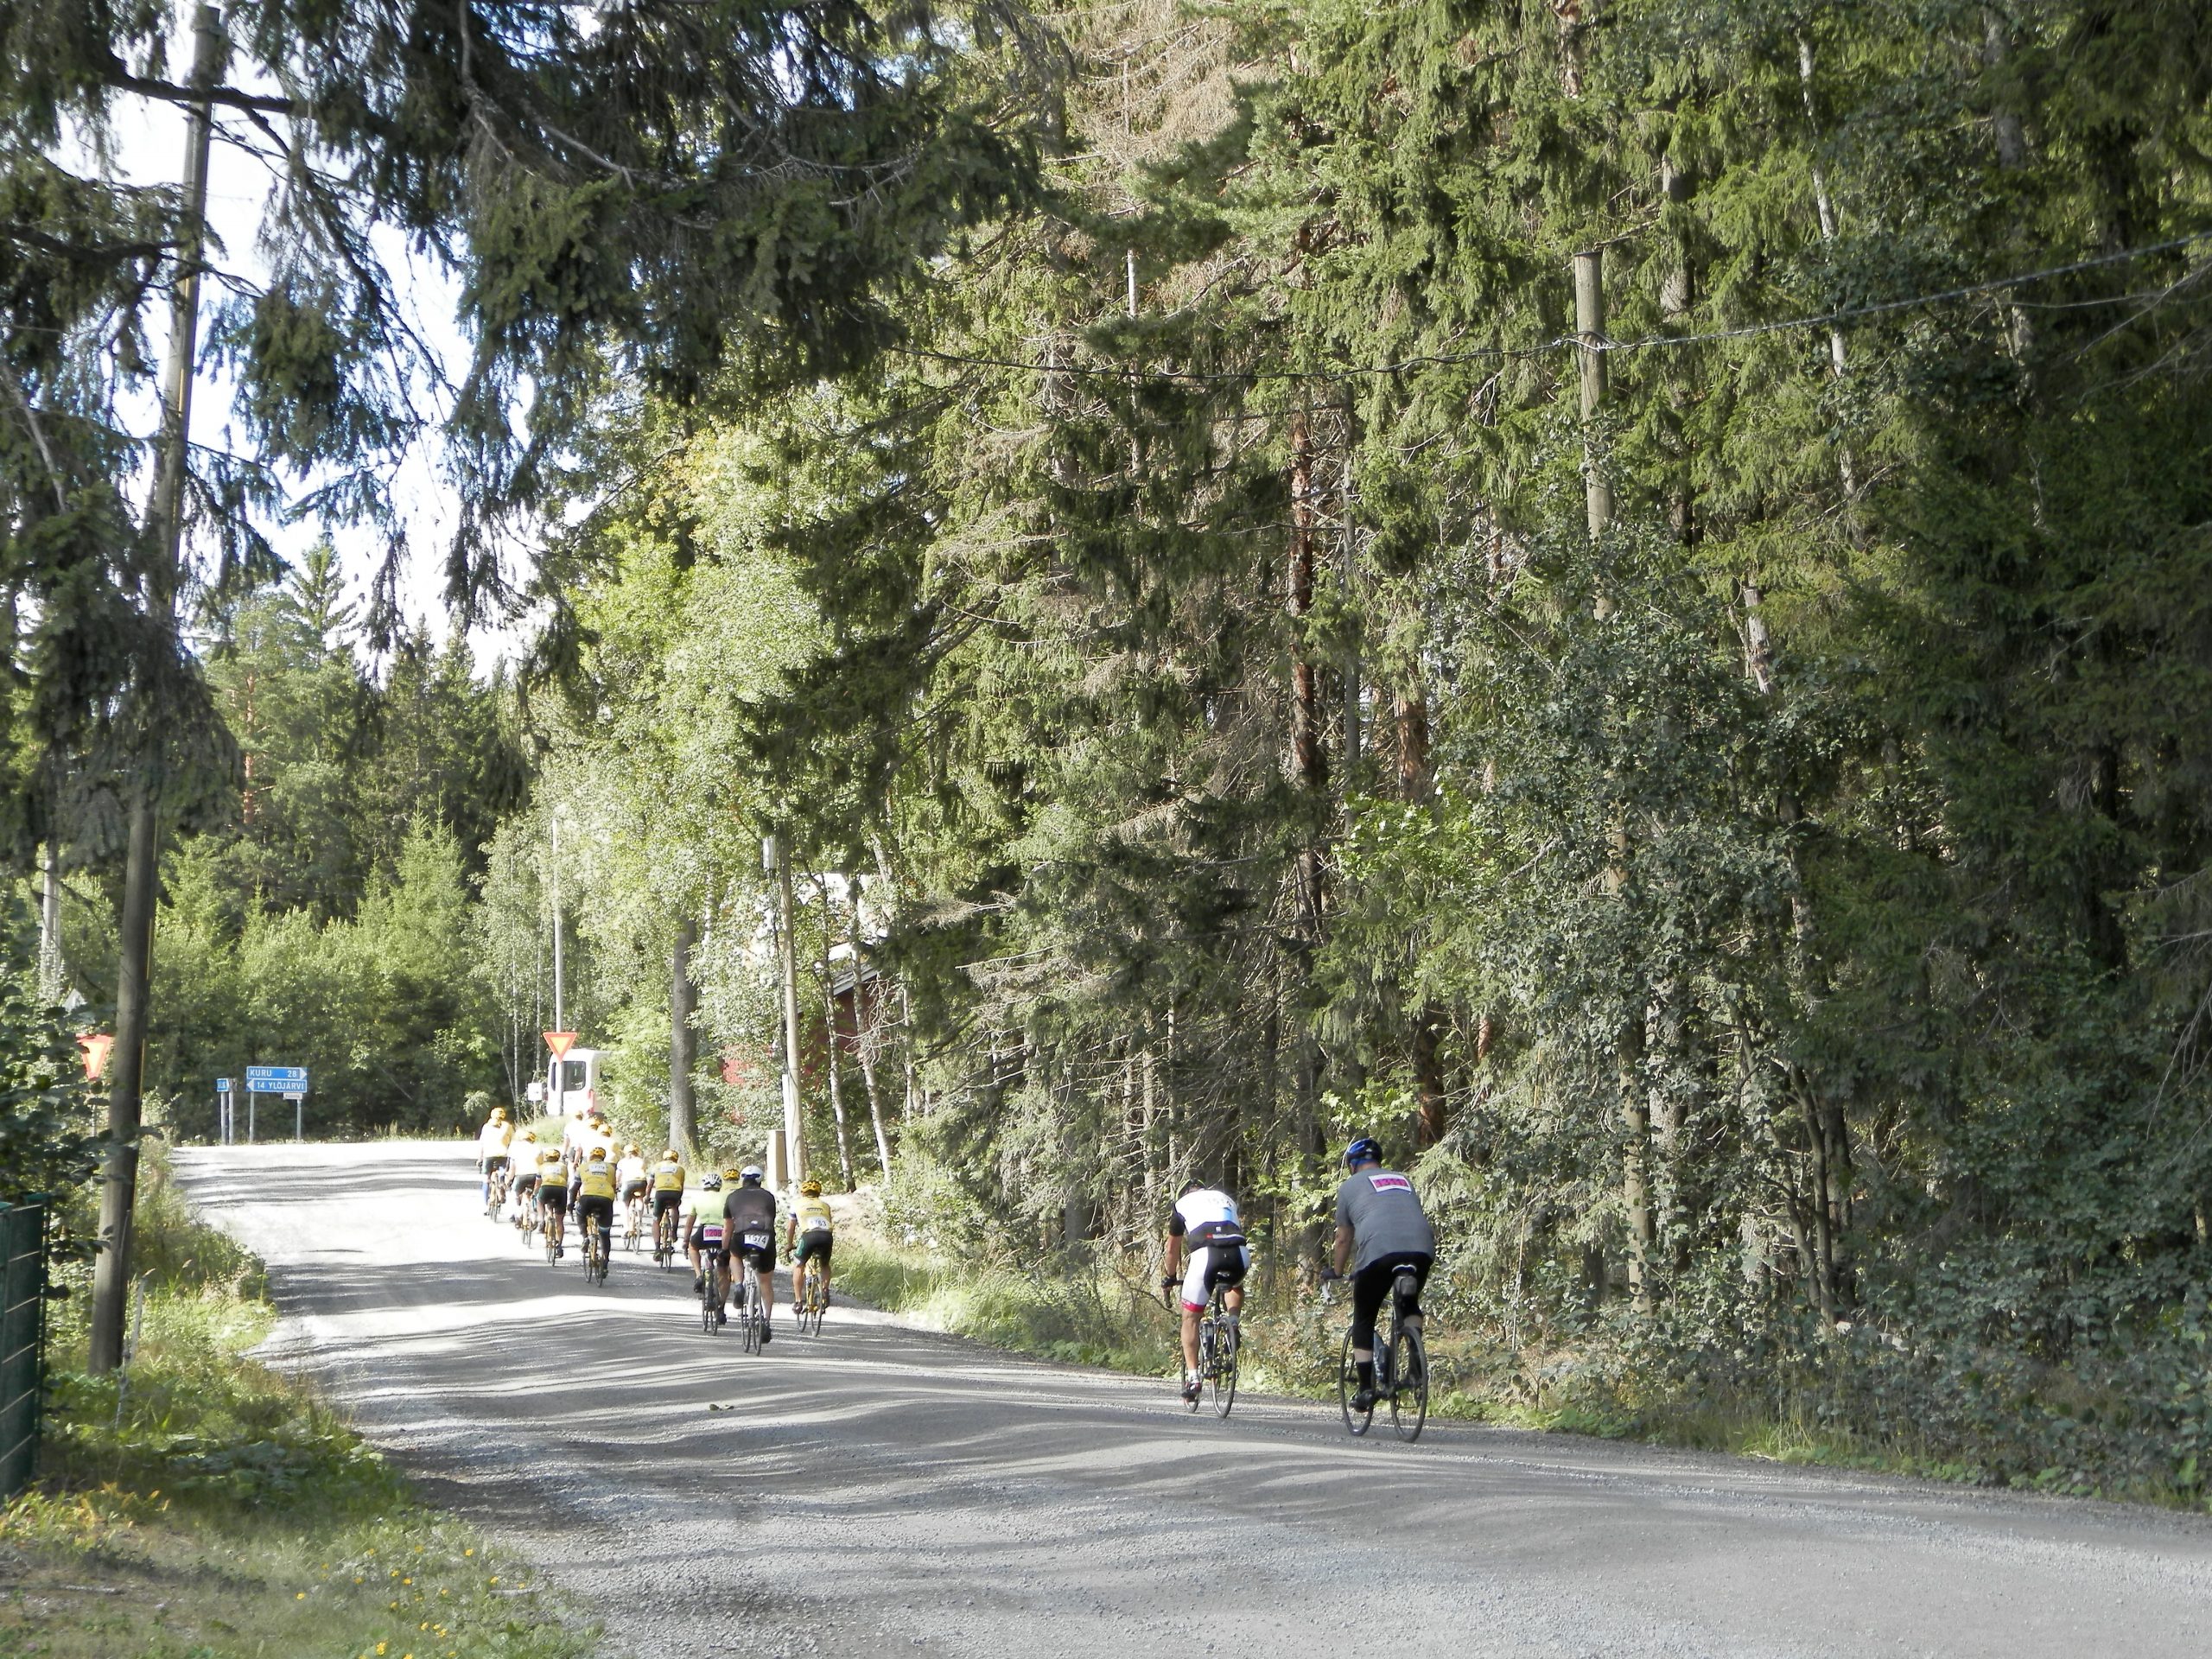 Pirkan pyöräilijät polkaisevat matkaan sunnuntaina – Viikon päästä perjantaina on luvassa Yöpyöräily ja Pirkan Pyhä